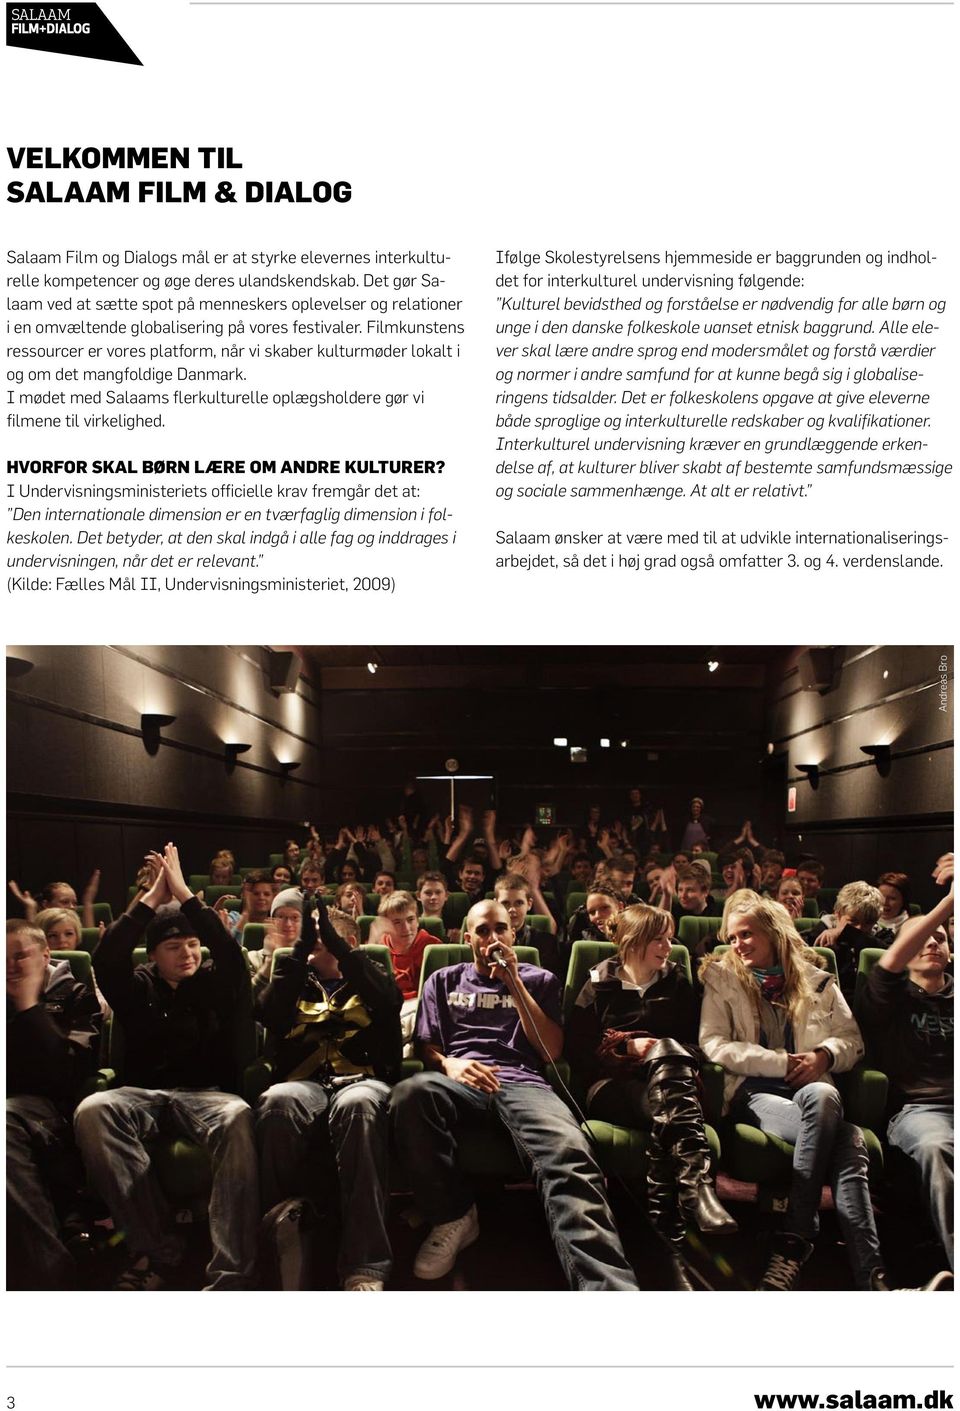 Filmkunstens ressourcer er vores platform, når vi skaber kulturmøder lokalt i og om det mangfoldige Danmark. I mødet med Salaams flerkulturelle oplægsholdere gør vi filmene til virkelighed.